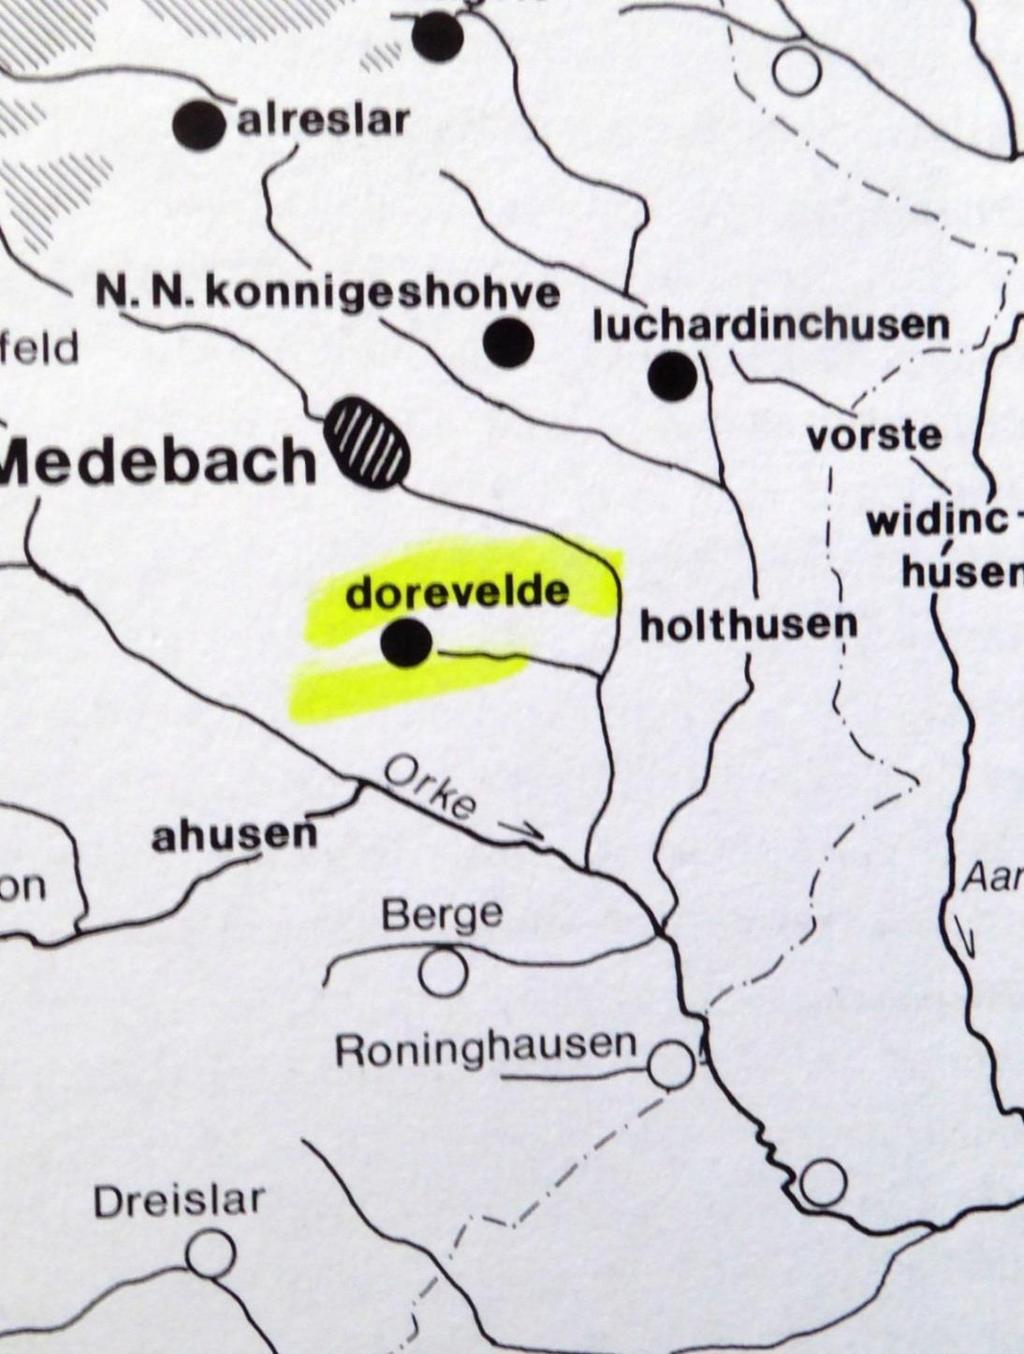 Der Standort dorevelde hätte zu Liudgers Zeiten, wegen seiner Nähe zur Stadtmitte und noch heidnischen Heidenstraße ein günstiger Standort für sein